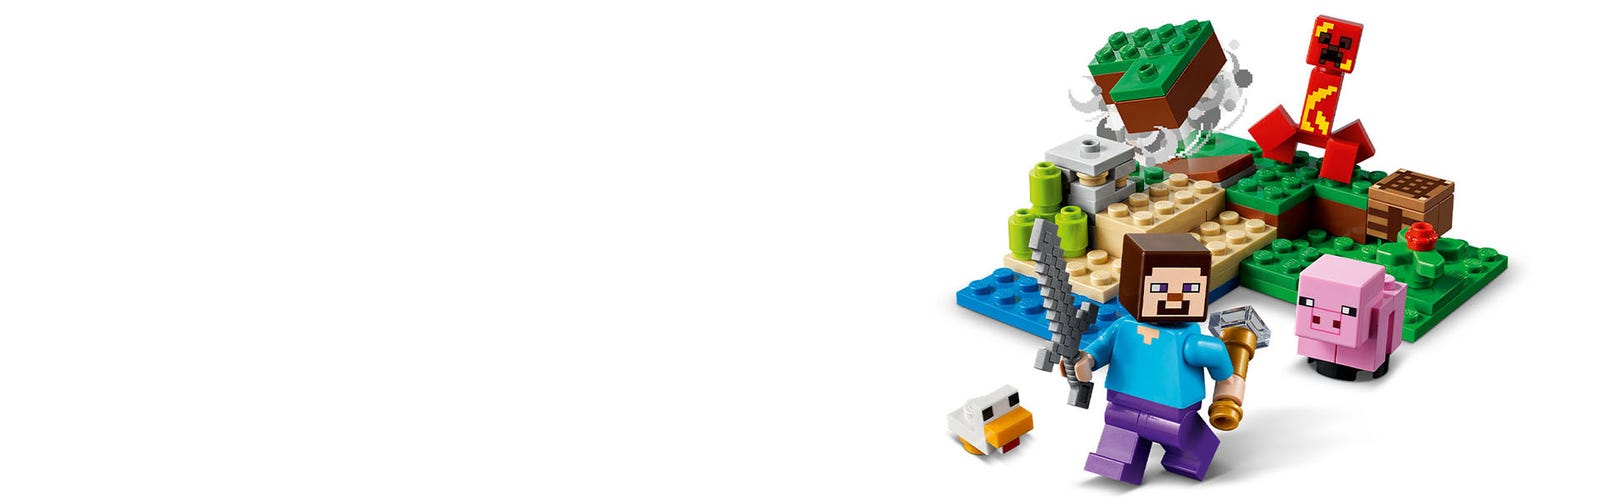 Lego Minecraft A Emboscada Do Creeper 72 Peças - 21177 - Fabrica da Alegria